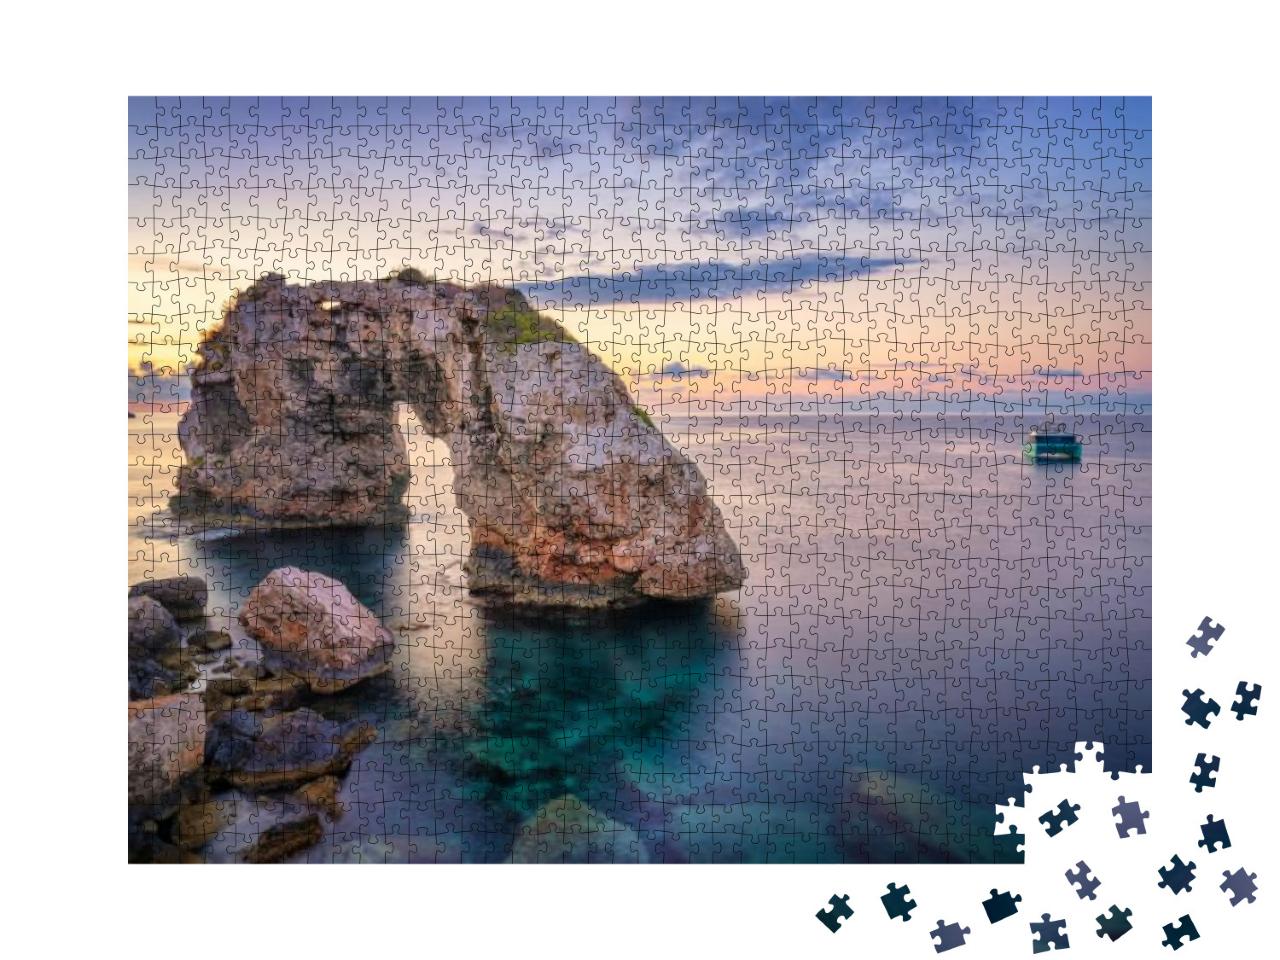 Puzzle 1000 Teile „Es Pontas auf Mallorca mit Boot“